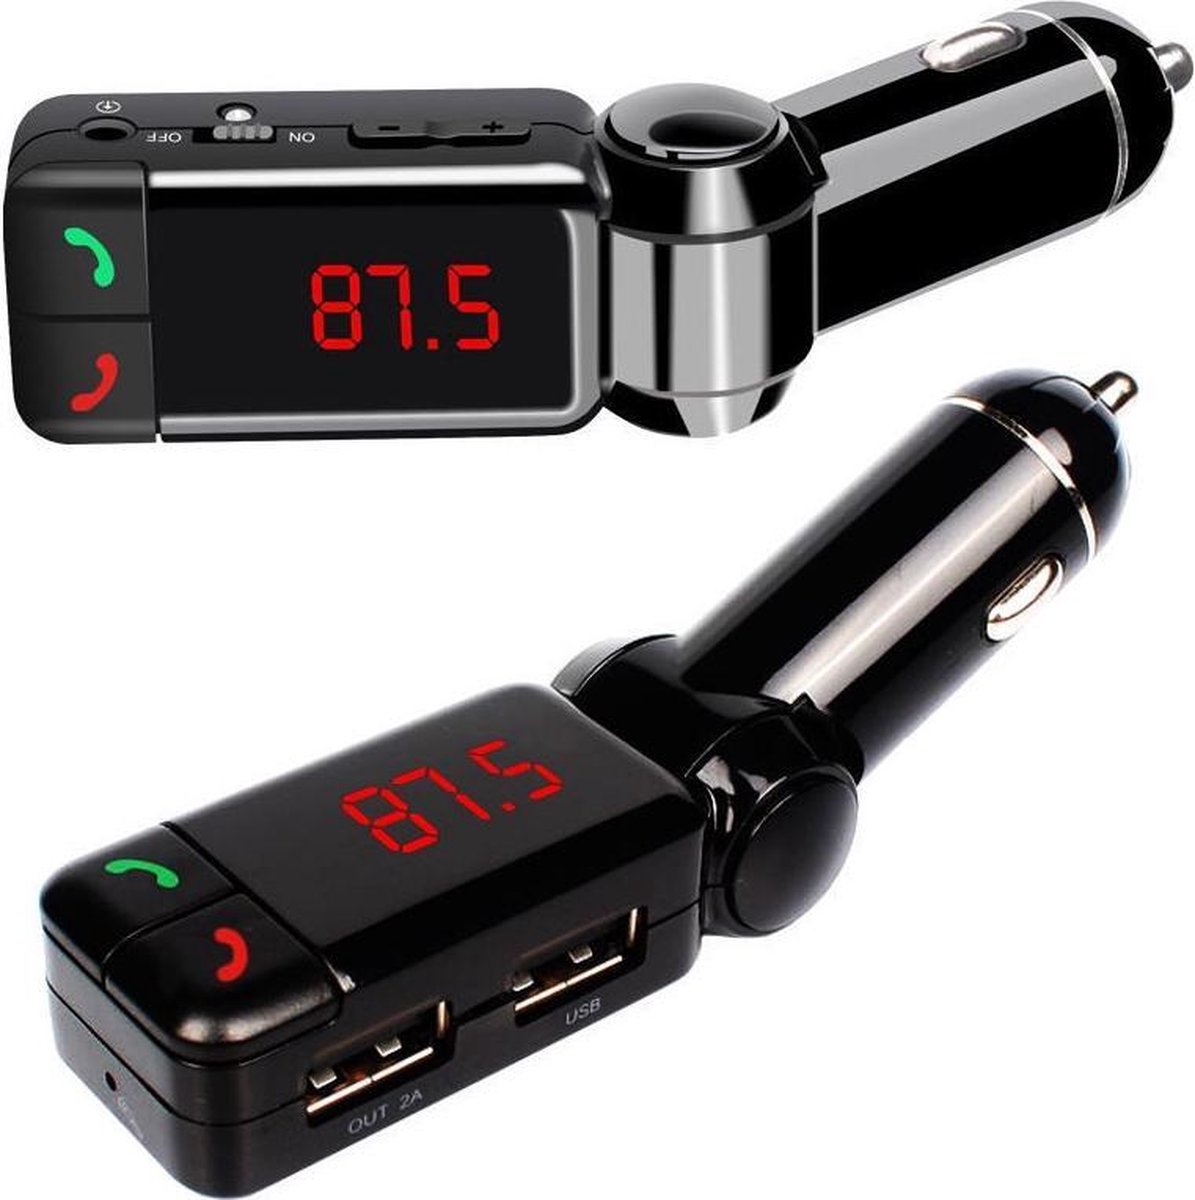 Bluetooth Handsfree Carkit + FM Transmitter + 2 USB poorten - Premium Kwaliteit